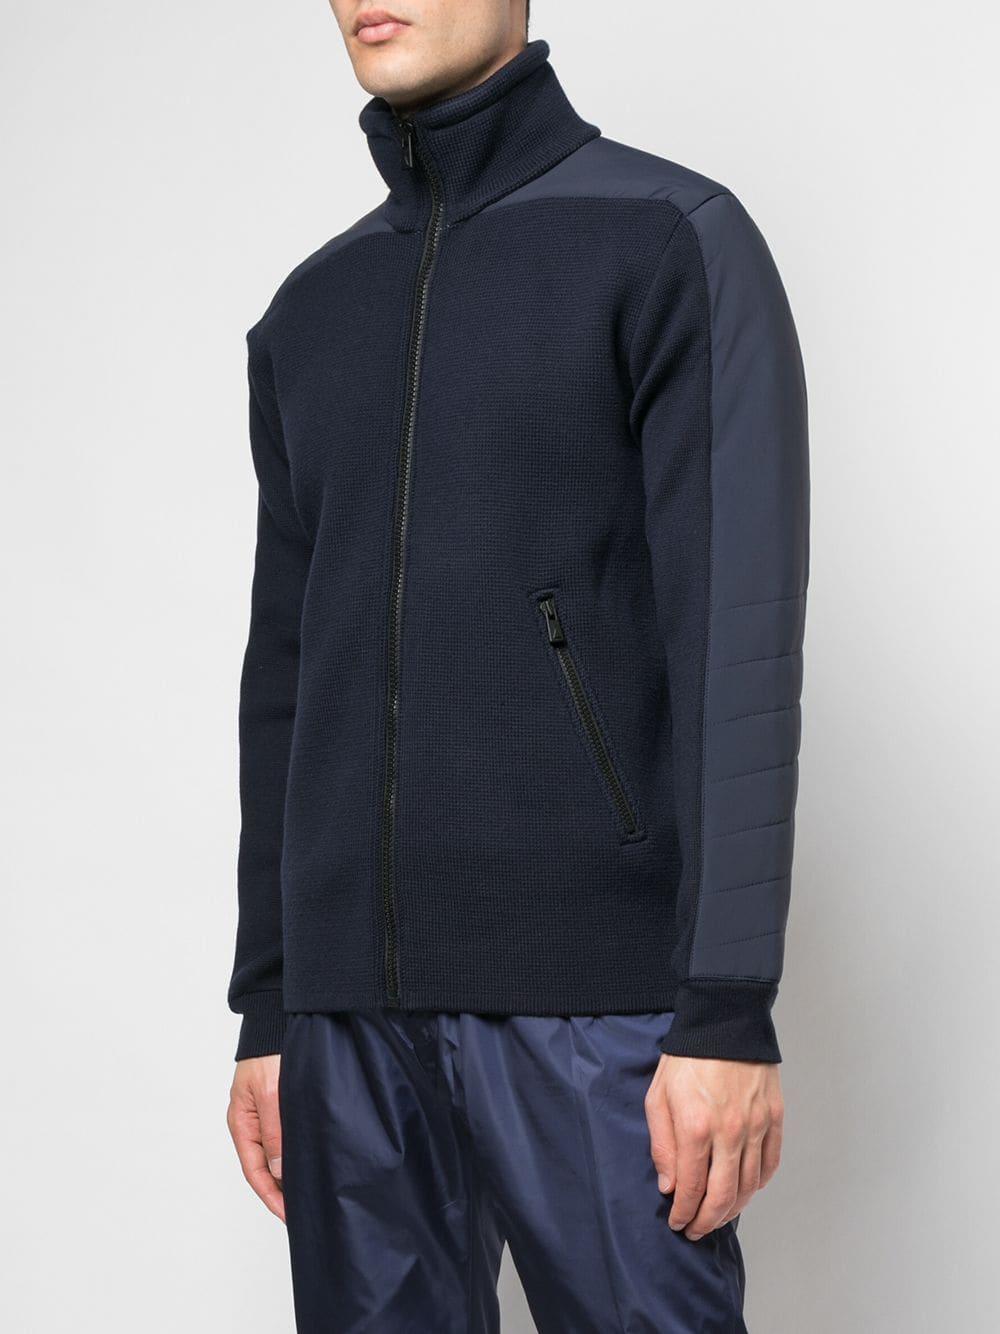 Aztech Mountain Wool Contrast Side Panel Knit Jacket in Blue for Men - Lyst